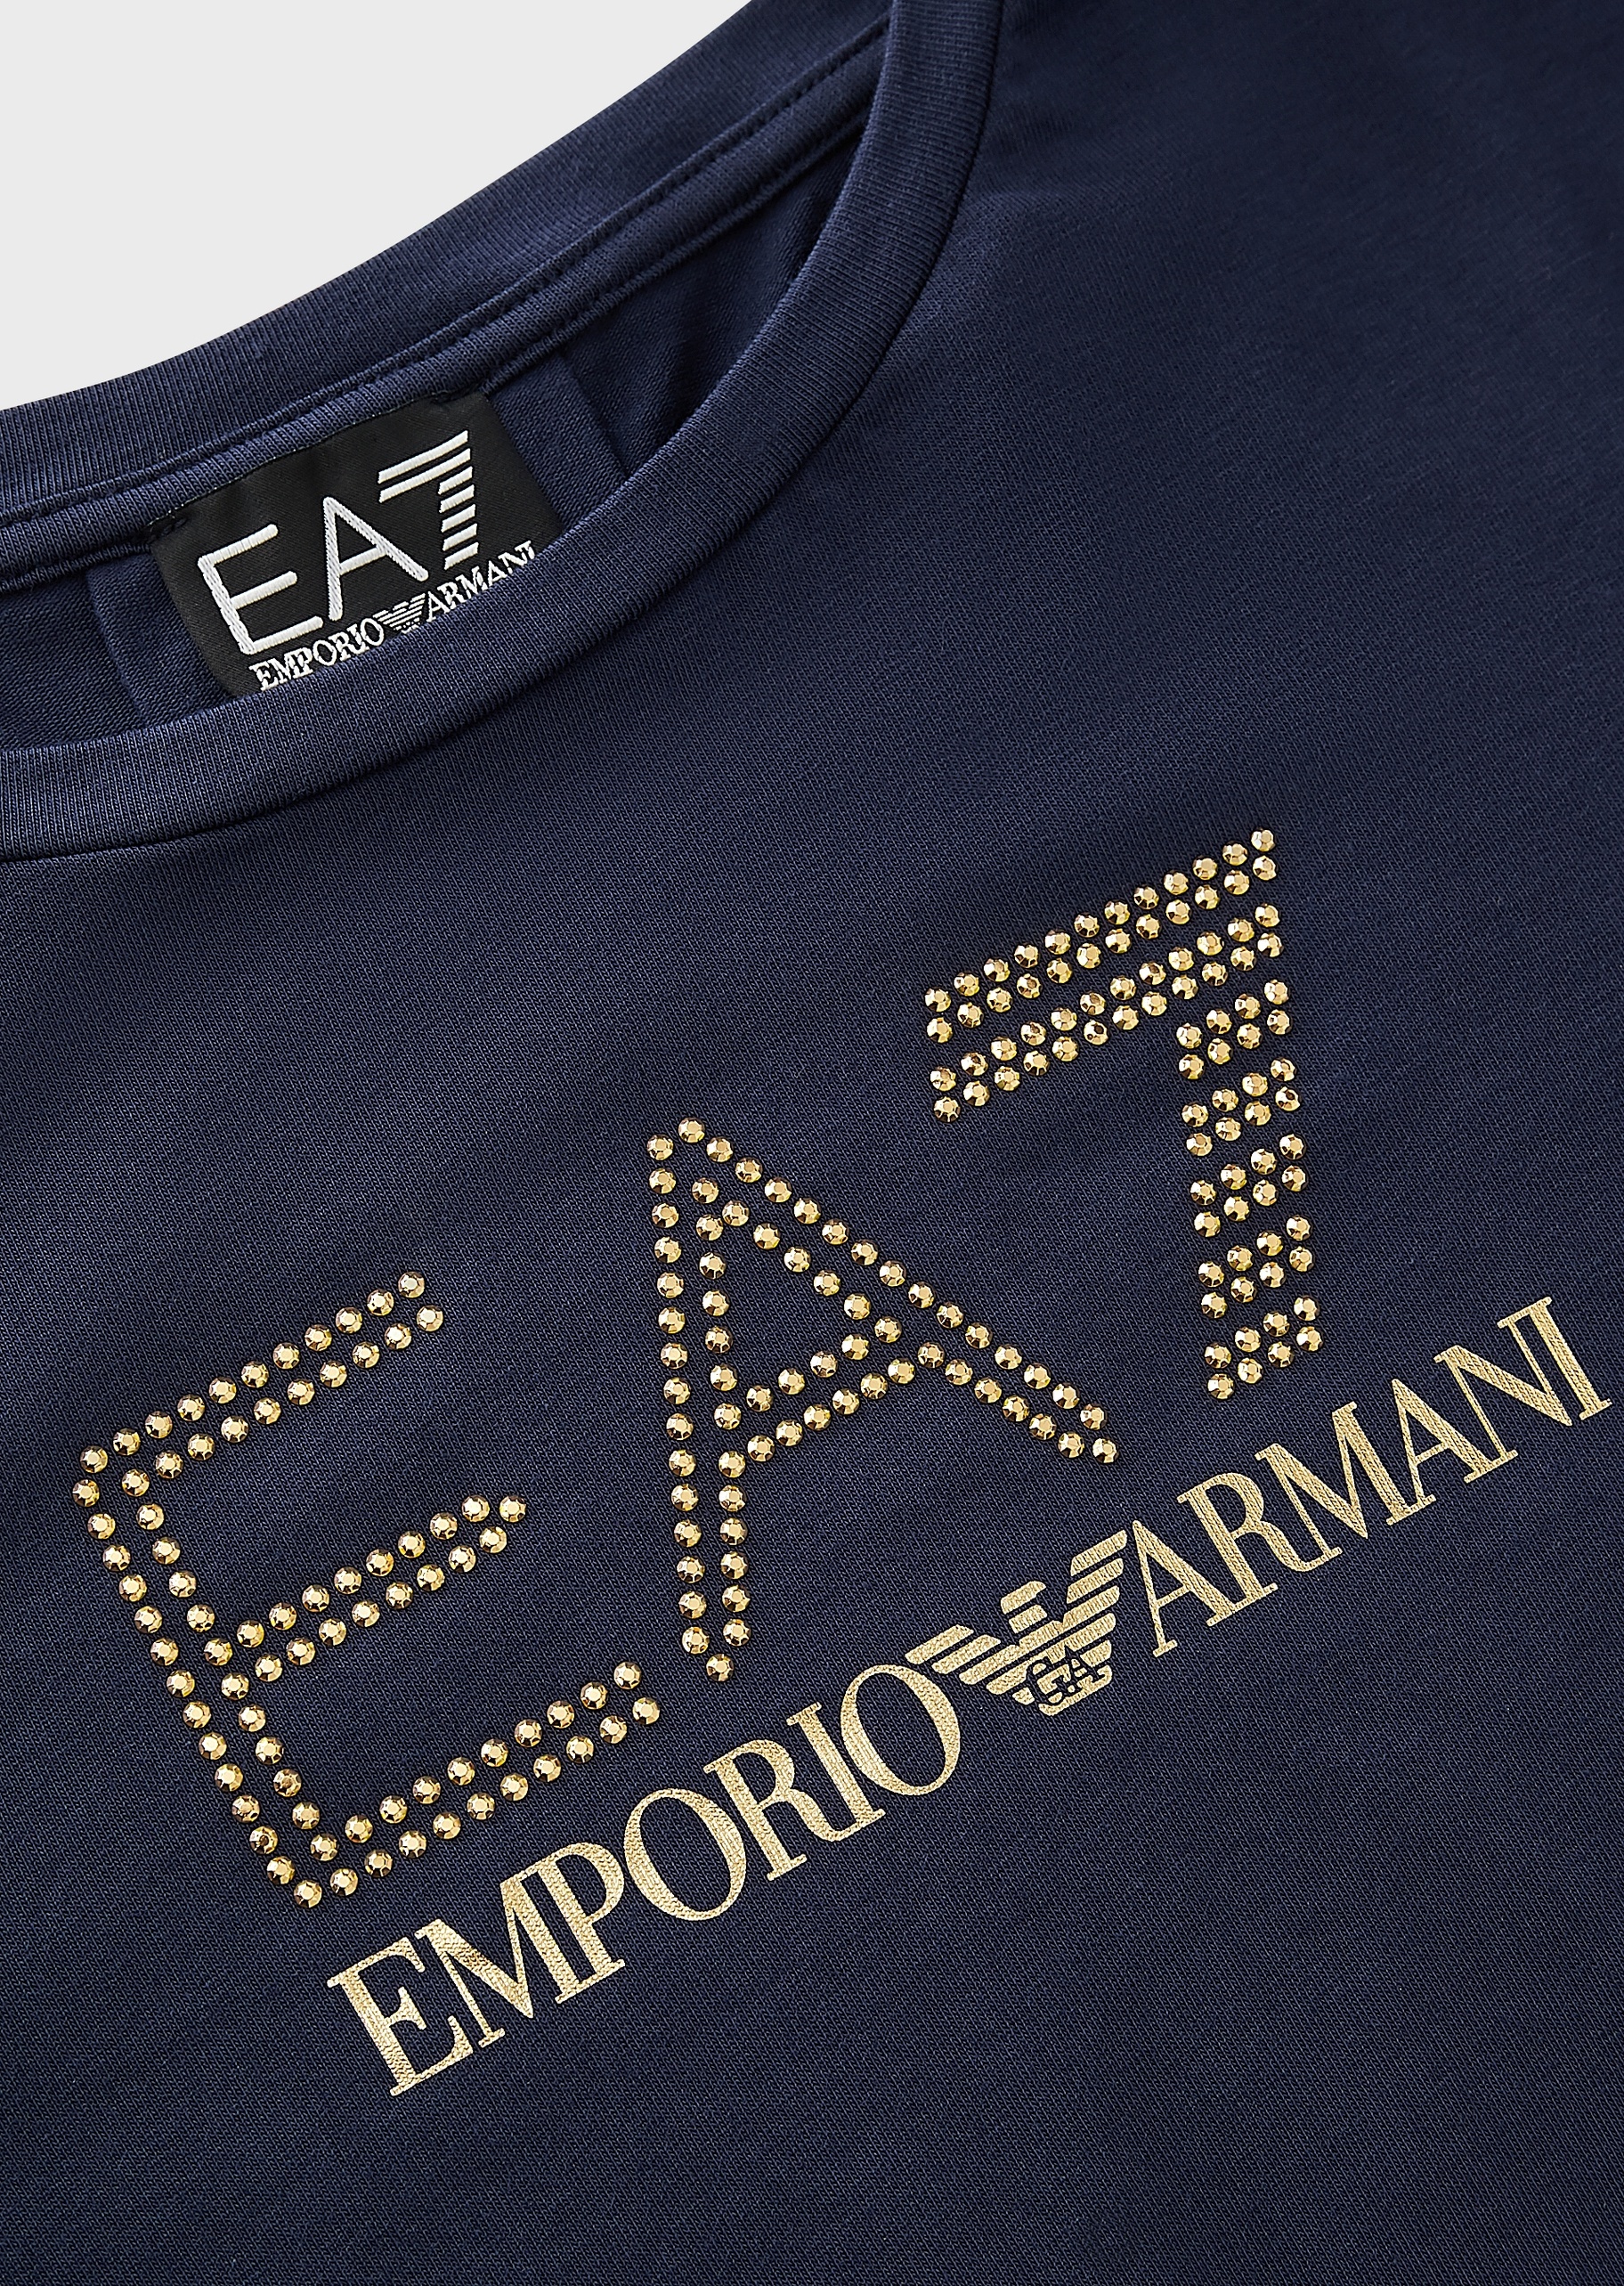 EA7 女士微弹修身长袖圆领健身训练休闲T恤